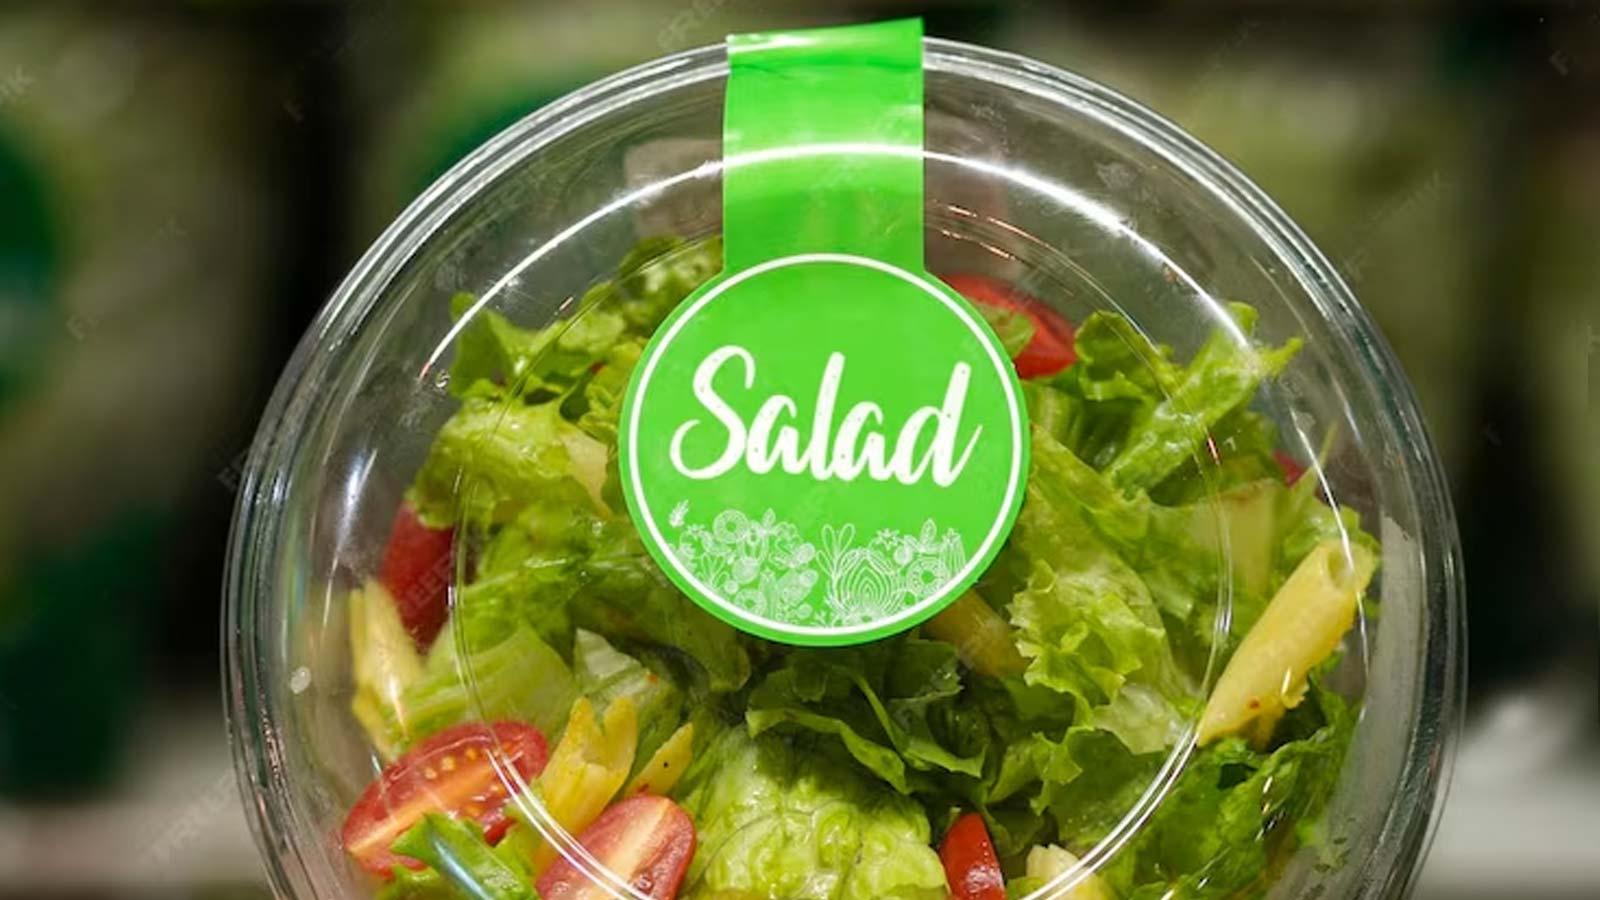 Τρως Συσκευασμένες Σαλάτες; Παράσιτο συνδέεται με στομαχικά προβλήματα και διάρροια